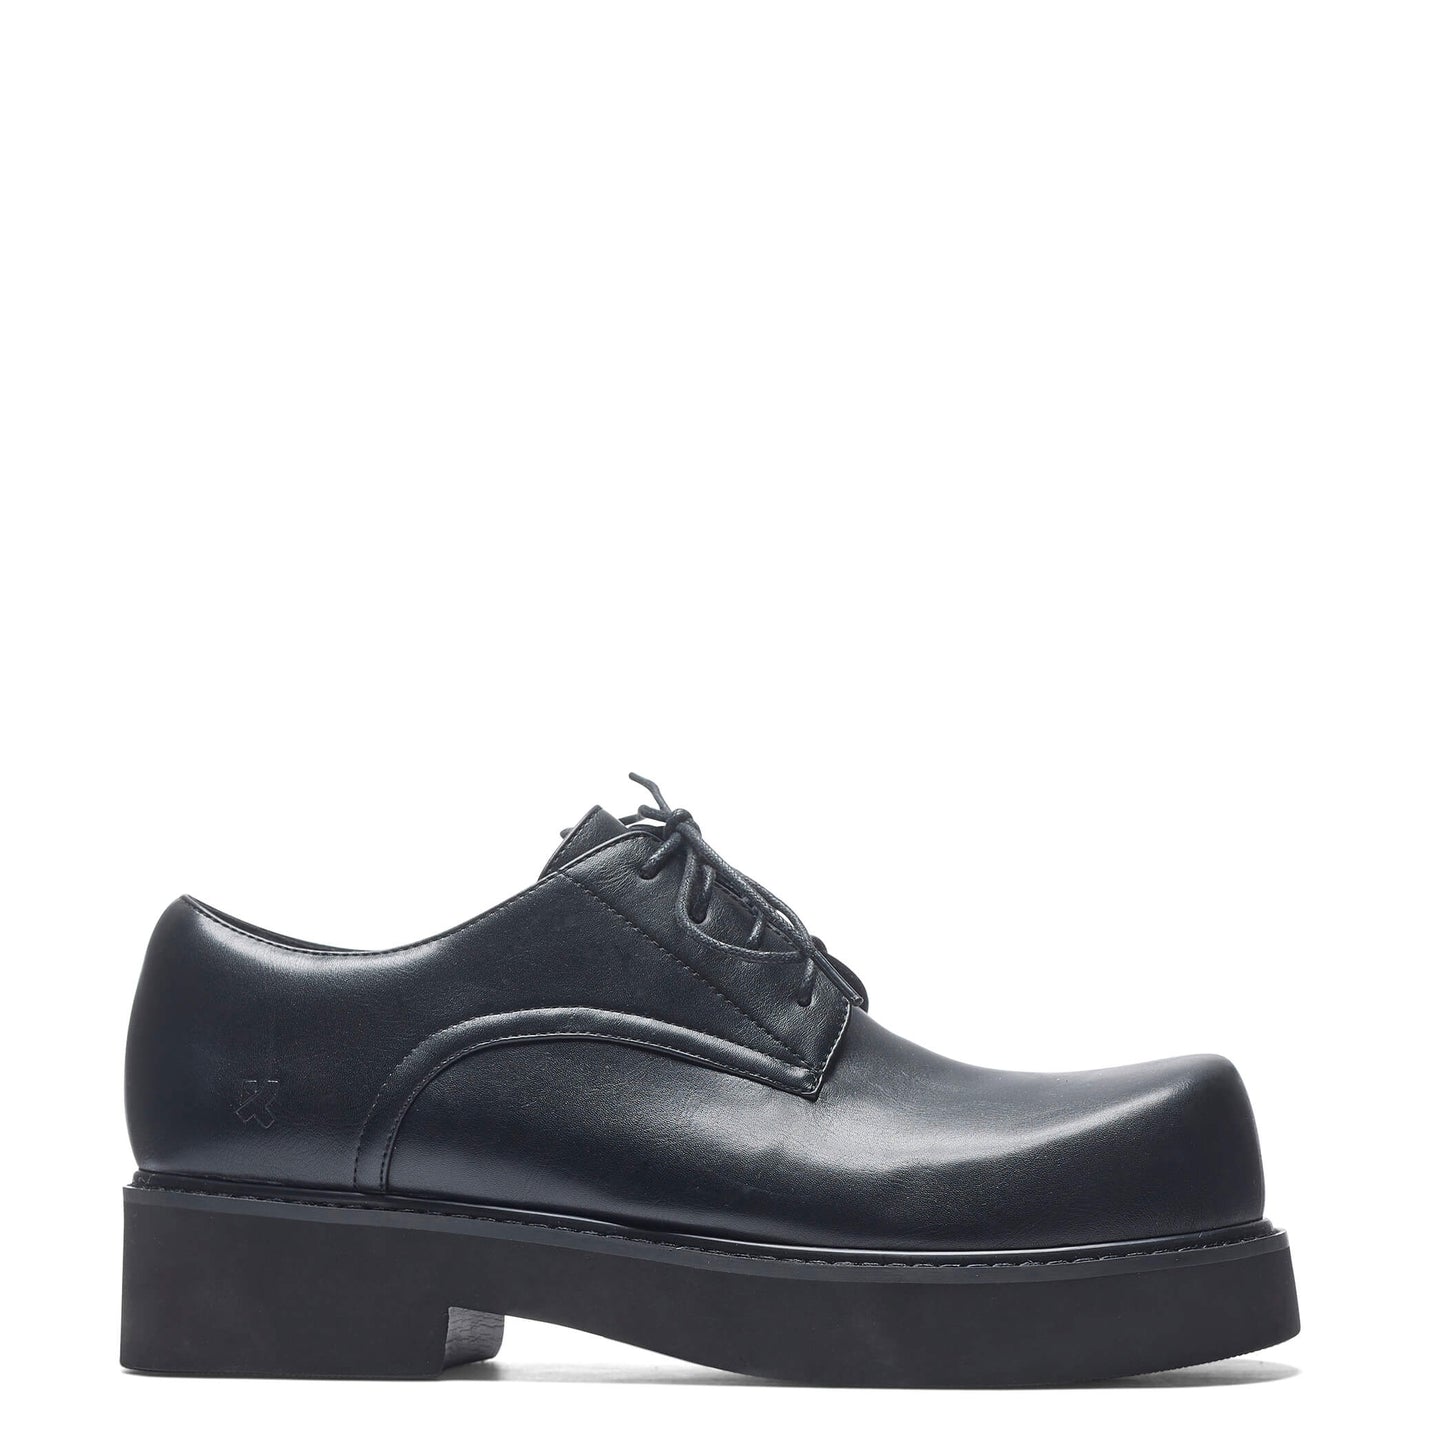 400% Oversized Derby Shoes - Black - Koi Footwear - Side View